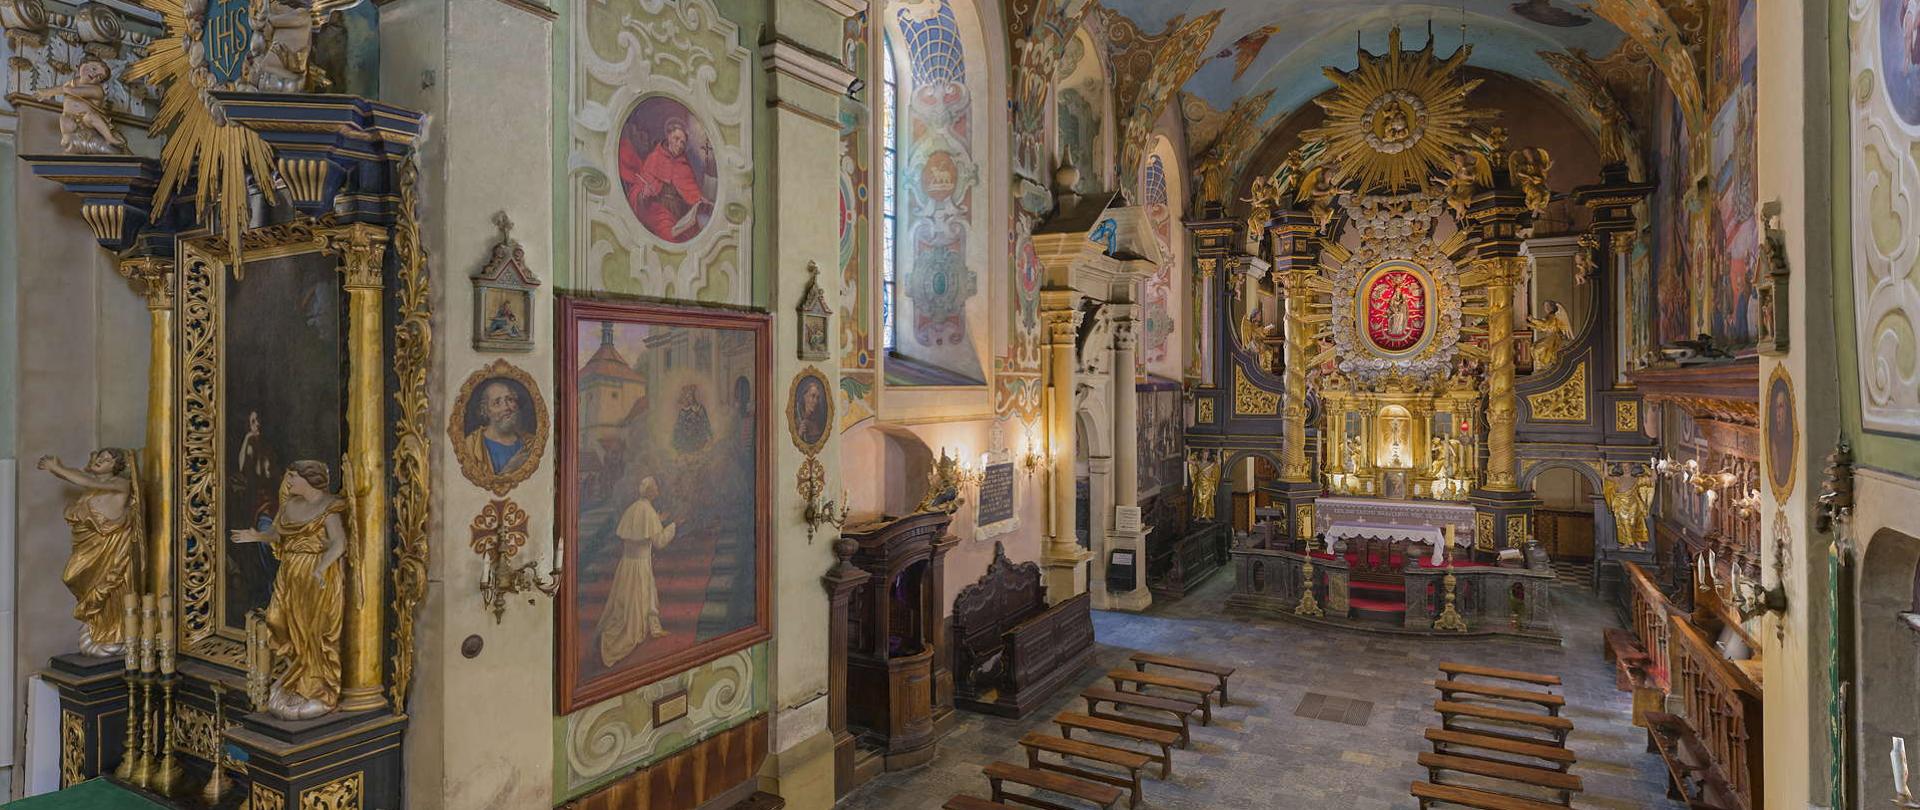 Wnętrze Bazyliki Kalwaryjskiej w centralnym miejscu ołtarz główny, po lewej obraz ze świętym Janem Pawłem II